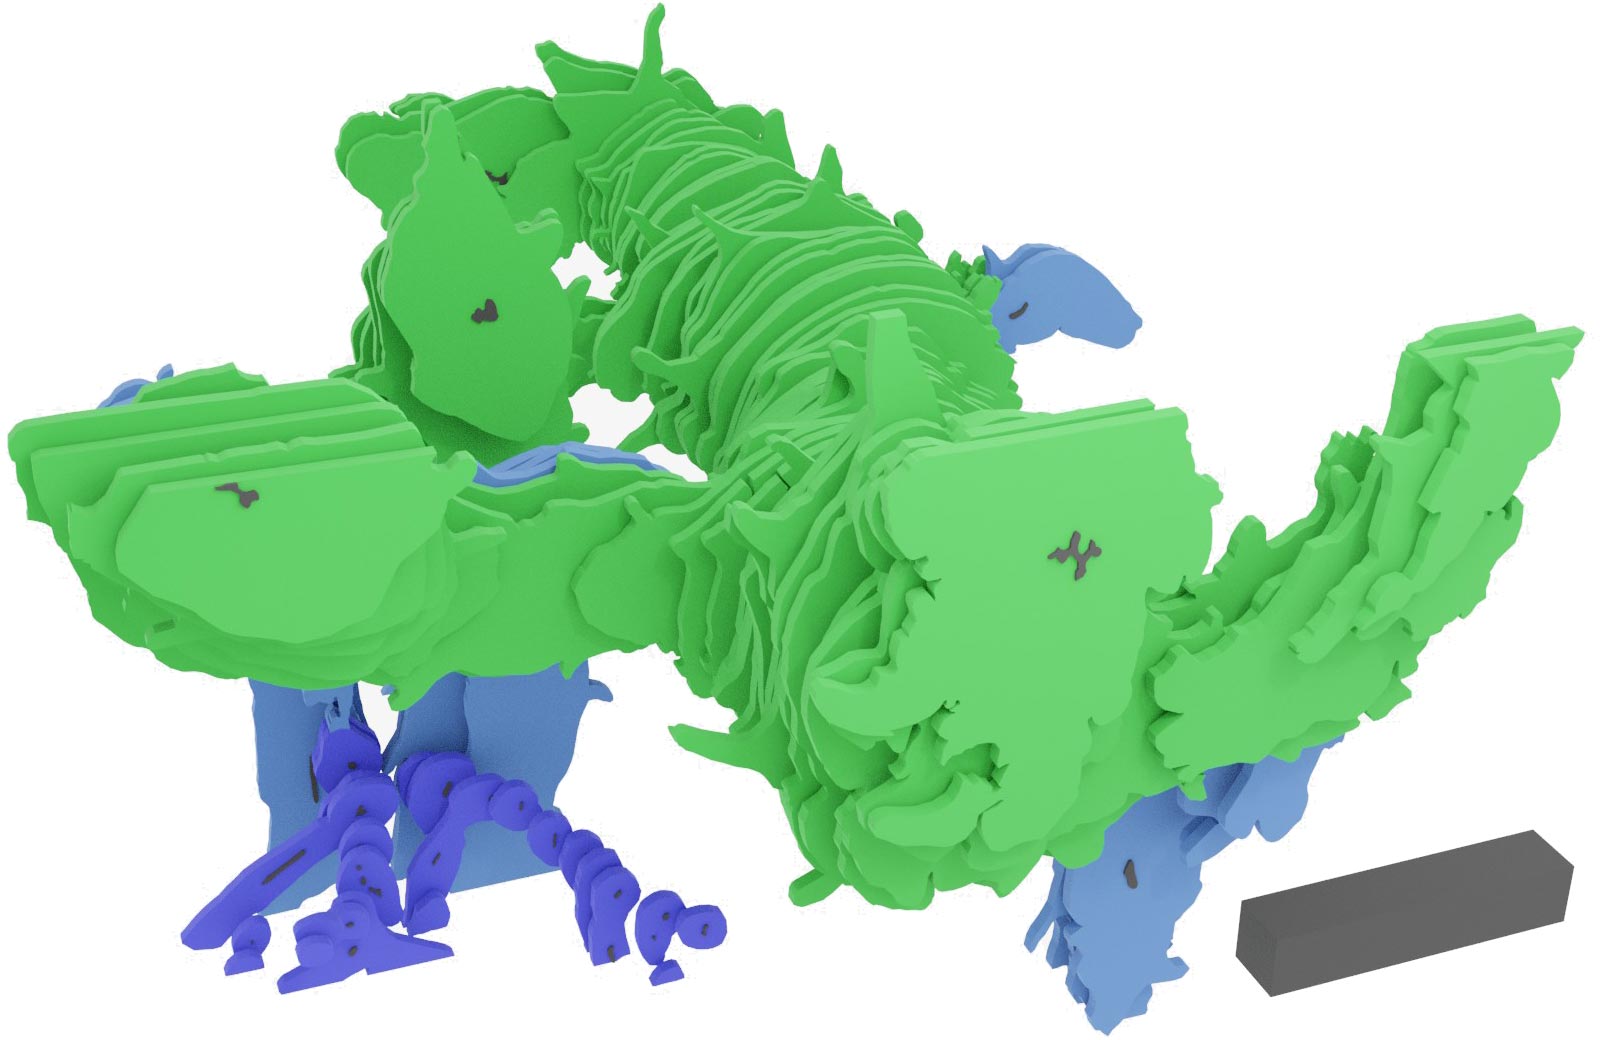 Asteroxylon mackiei的三维重建是通过数字方式重新组合薄薄的岩石片制成的。该重建显示了绿色的高度分枝的叶状枝，以及蓝色和紫色的根系。3D比例尺为